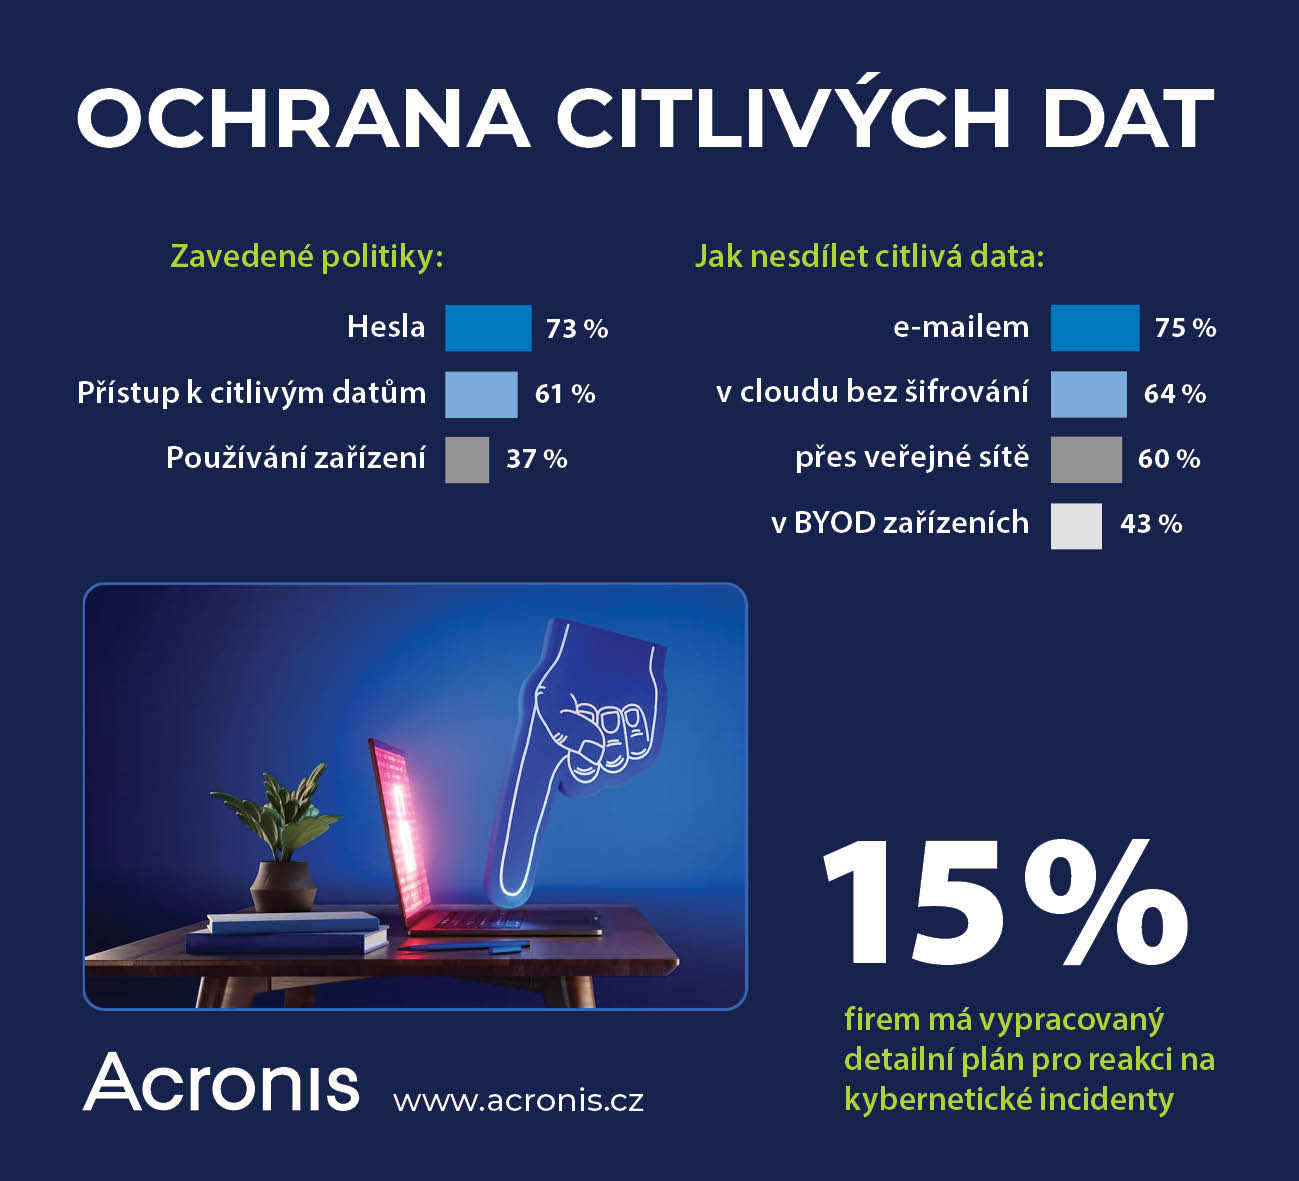 image Průzkum Acronis: přes 60 % lokálních firem již zavedlo politiku ochrany citlivých dat 